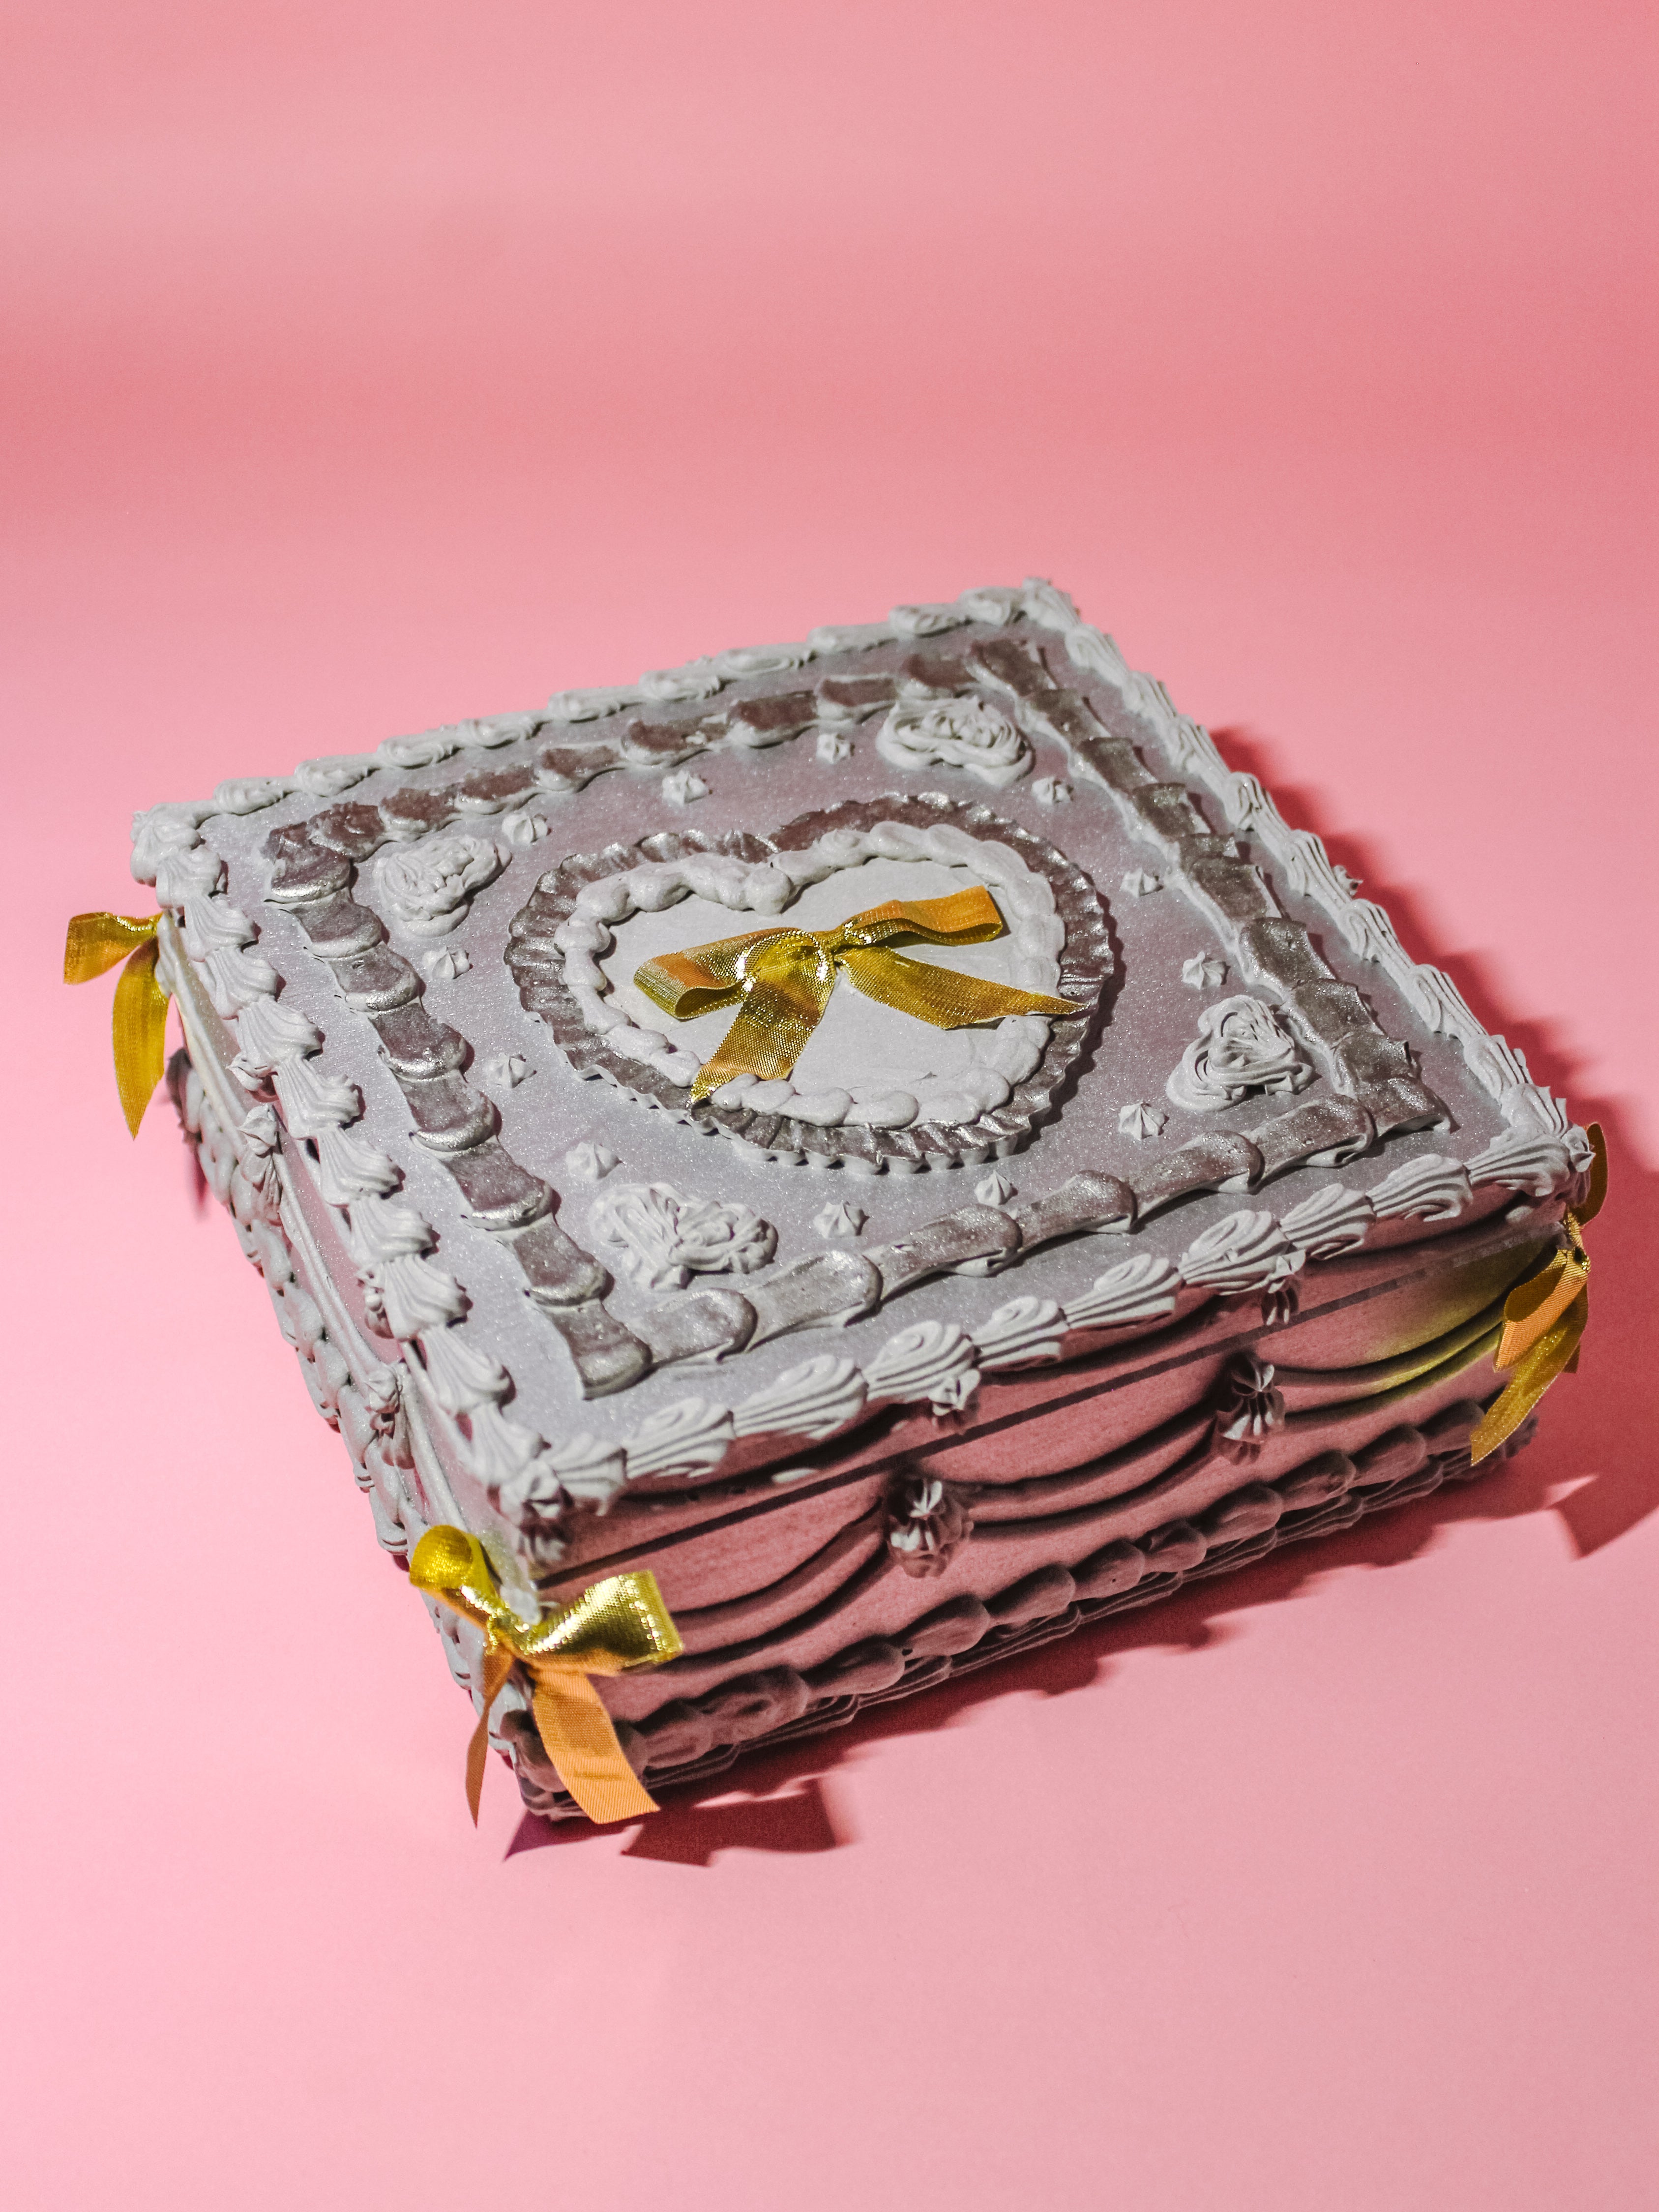 silver hearts 6” square cake box